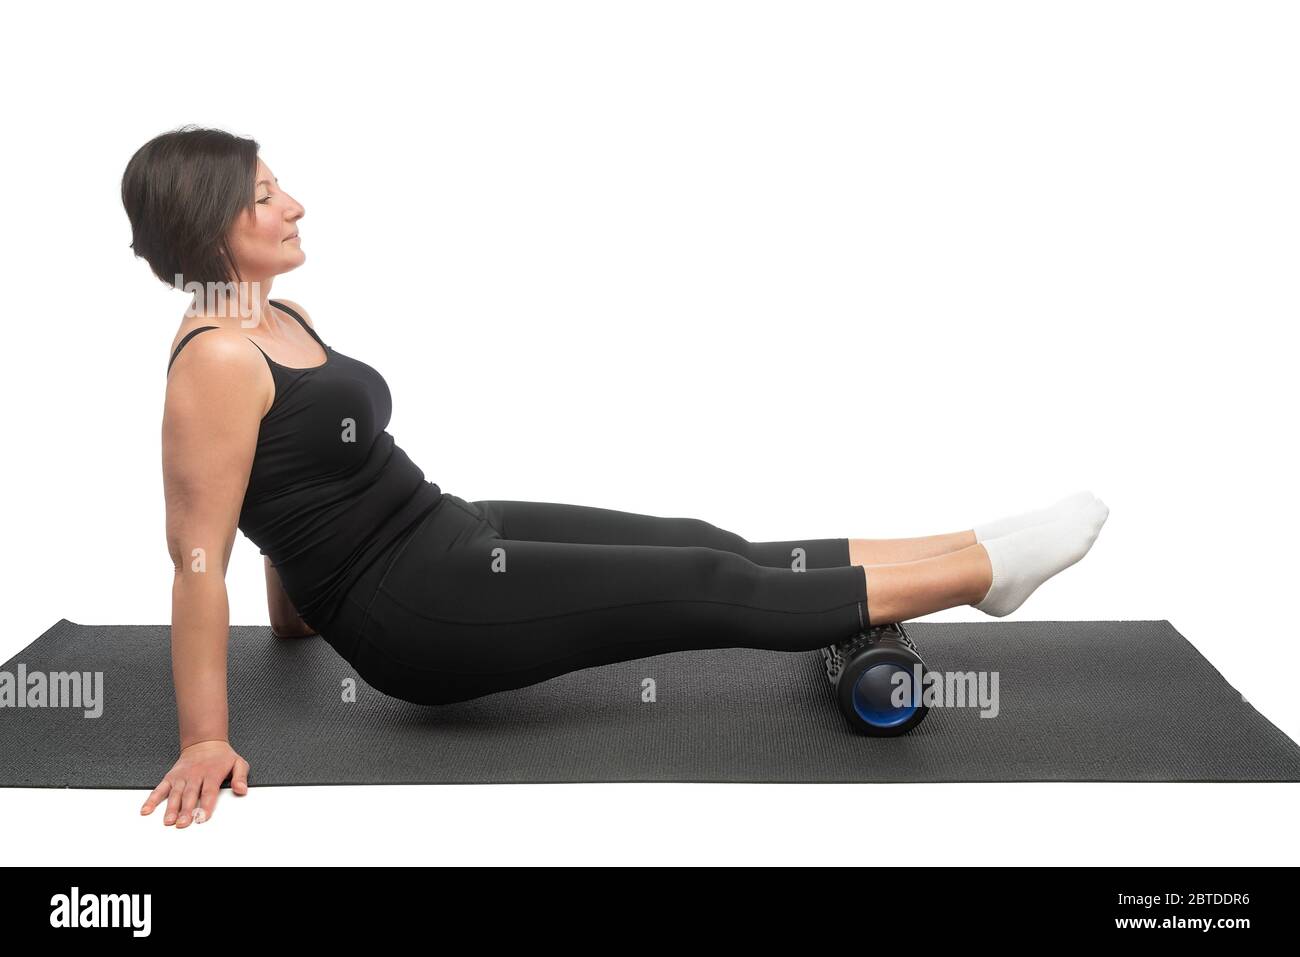 Una mujer de mediana edad en una esterilla gimnástica con rodillo miofascial hace un ejercicio en sus caderas sobre un fondo blanco. Foto de stock